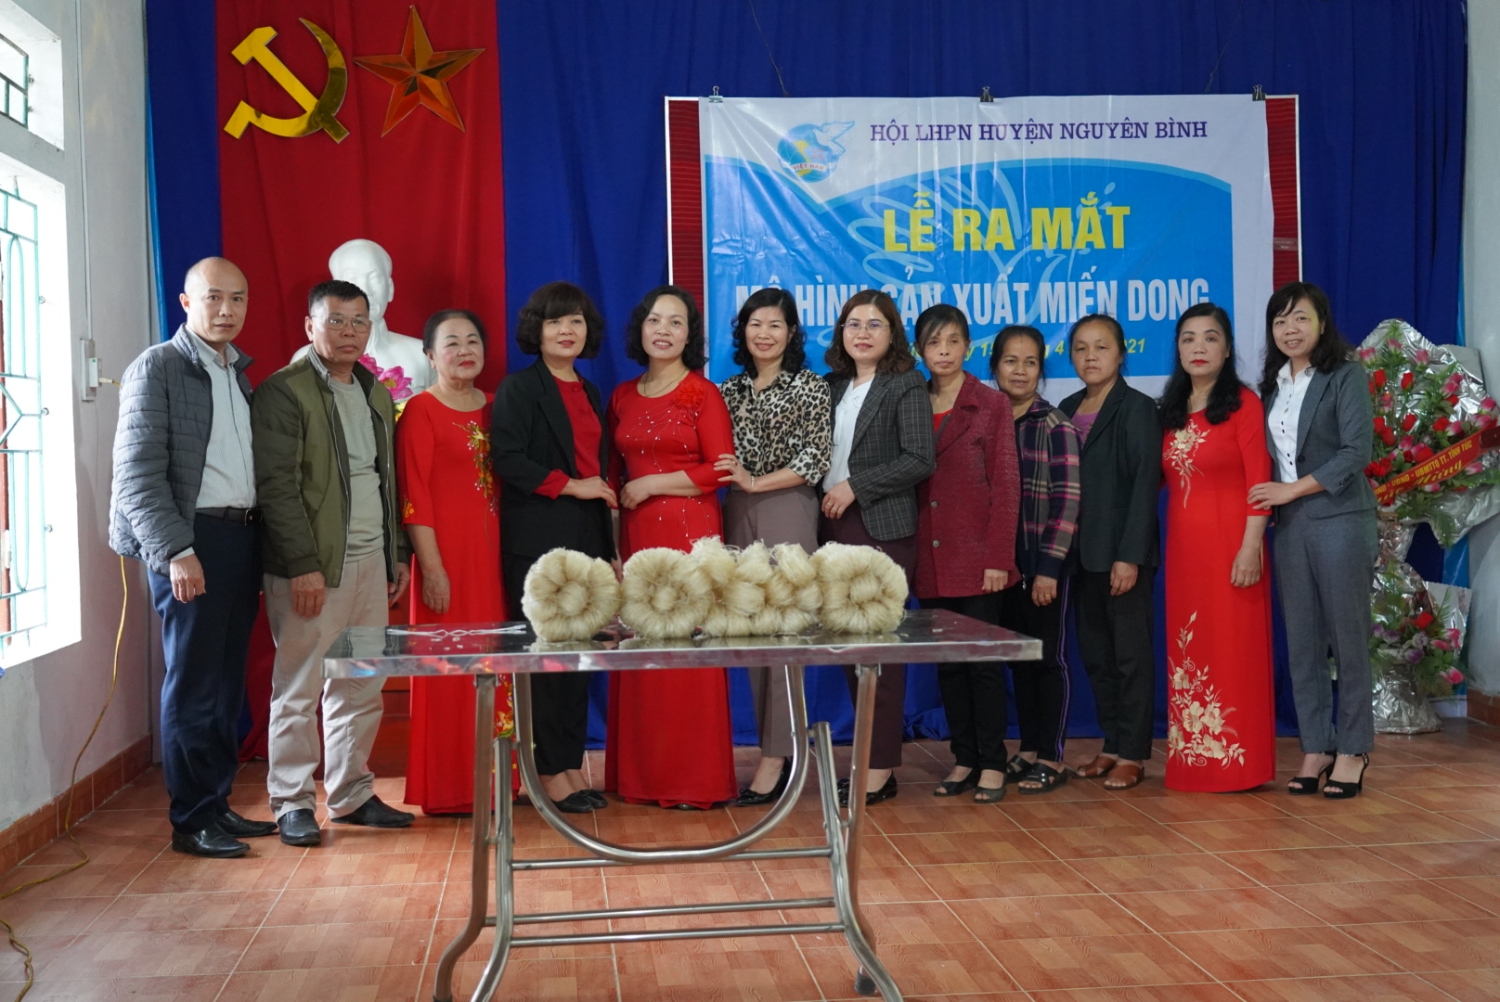 Hội liên hiệp phụ nữ huyện Nguyên Bình ra mắt mô hình  “Sản xuất Miến dong”